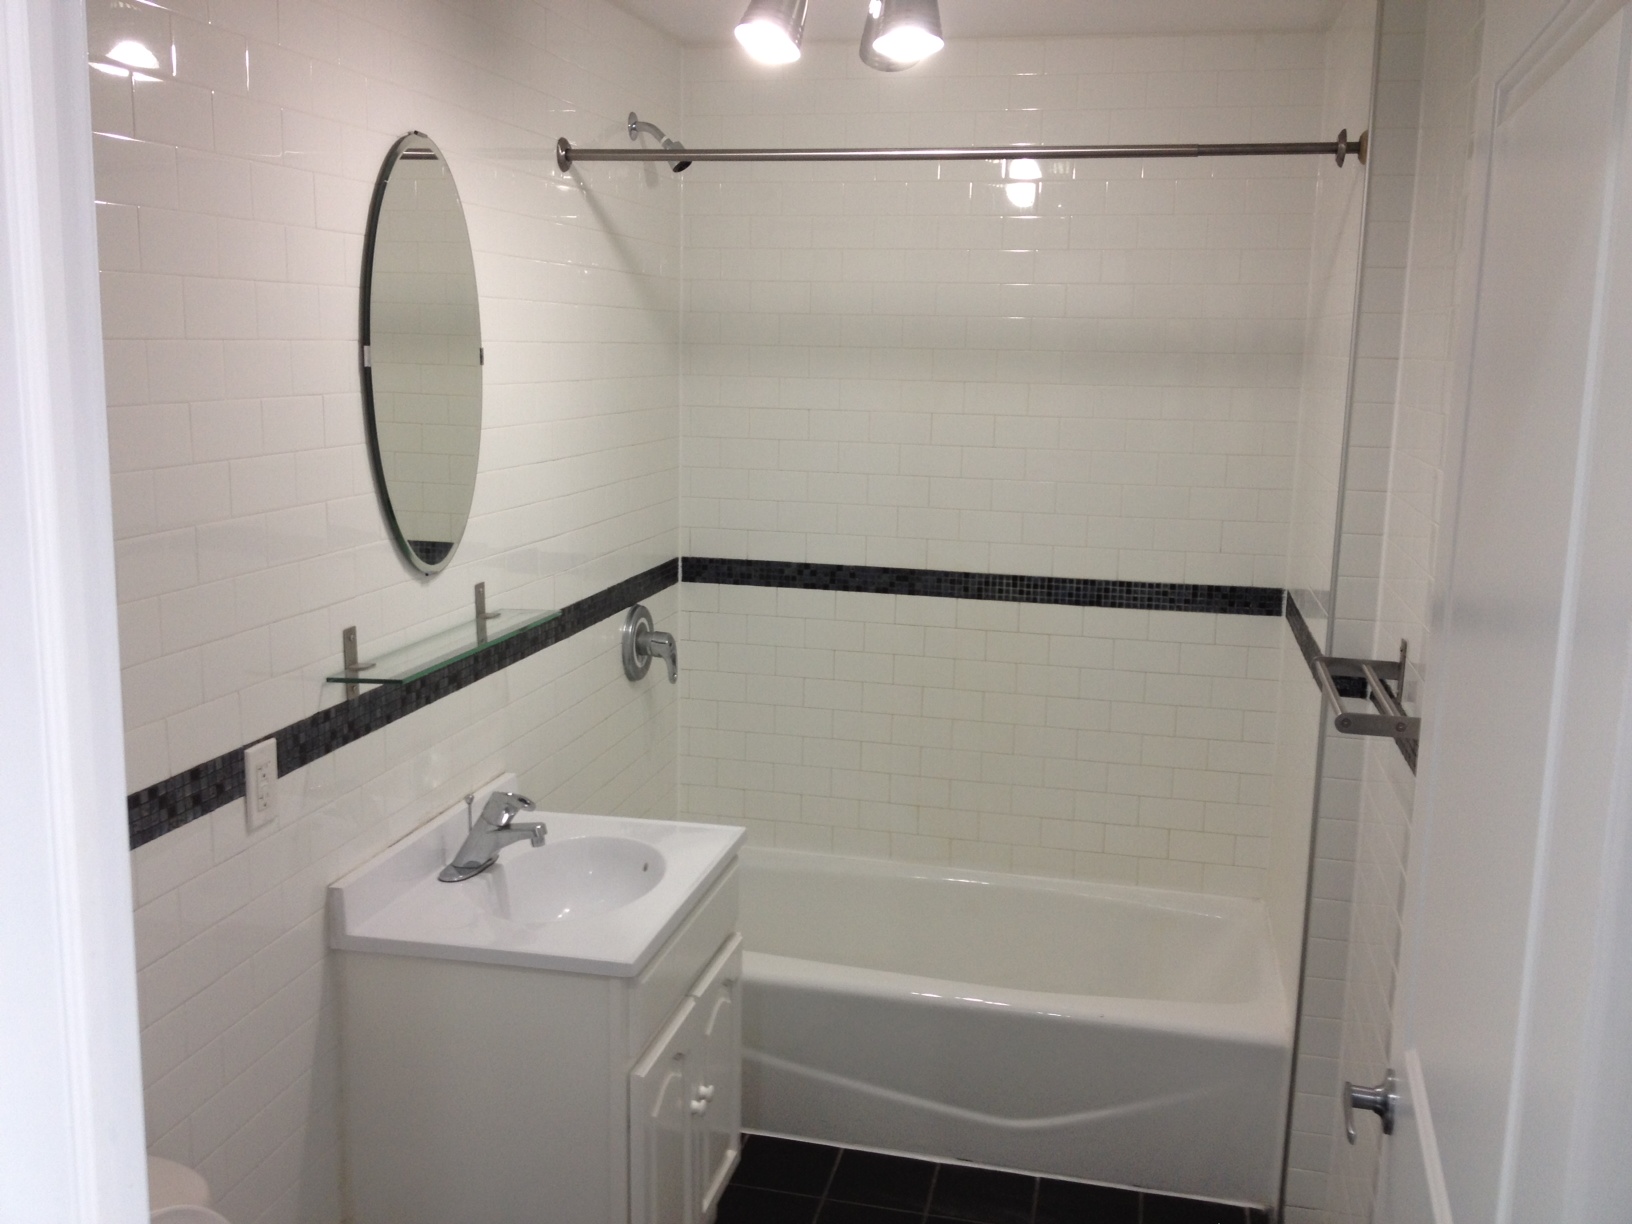 Bathroom-Subway-Tile-Designs